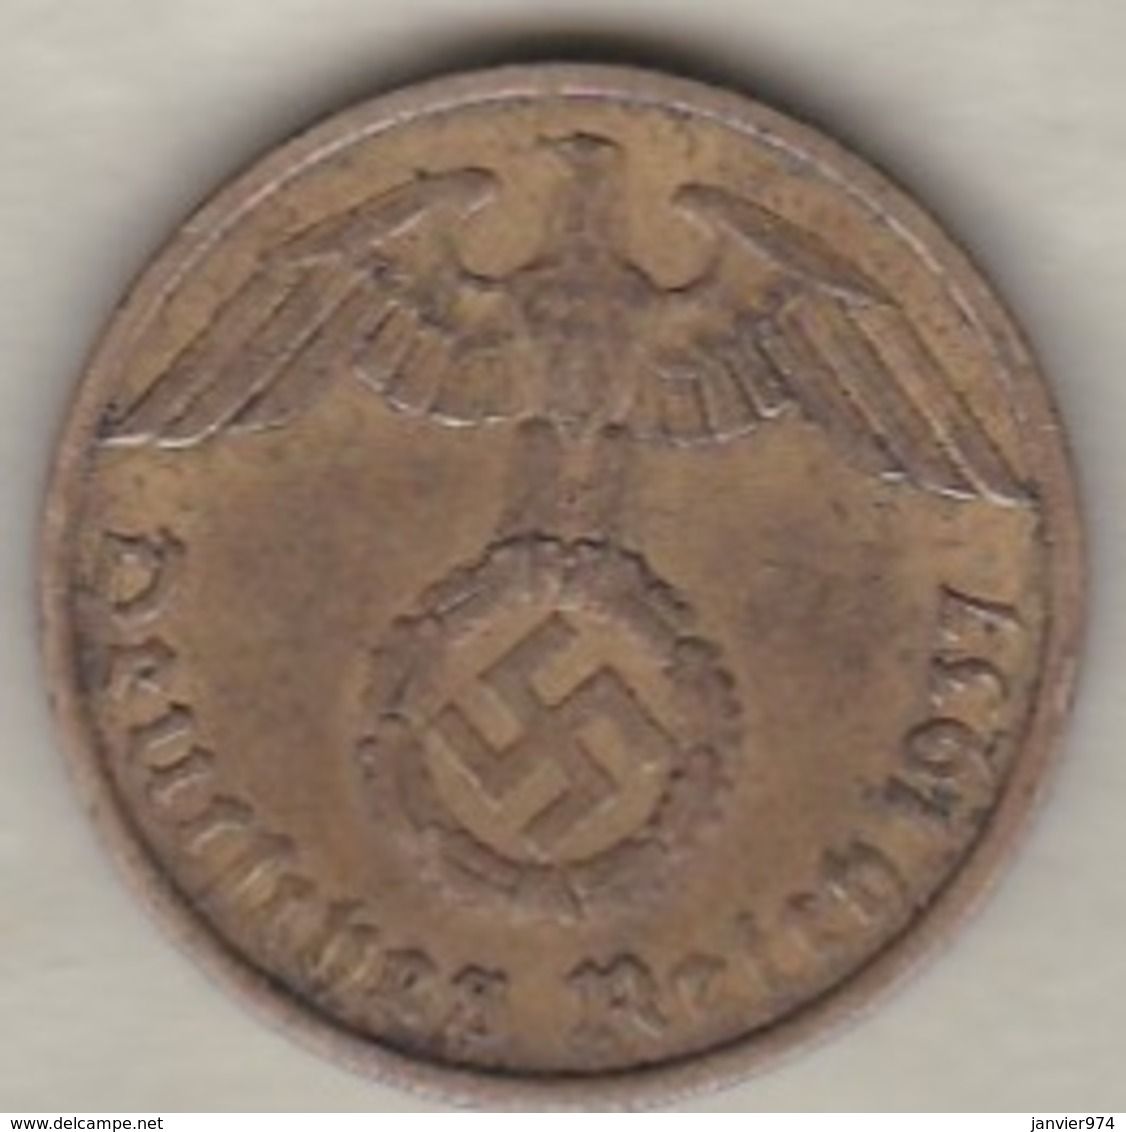 10 Reichspfennig 1937 A (BERLIN) Bronze-aluminium - 10 Reichspfennig